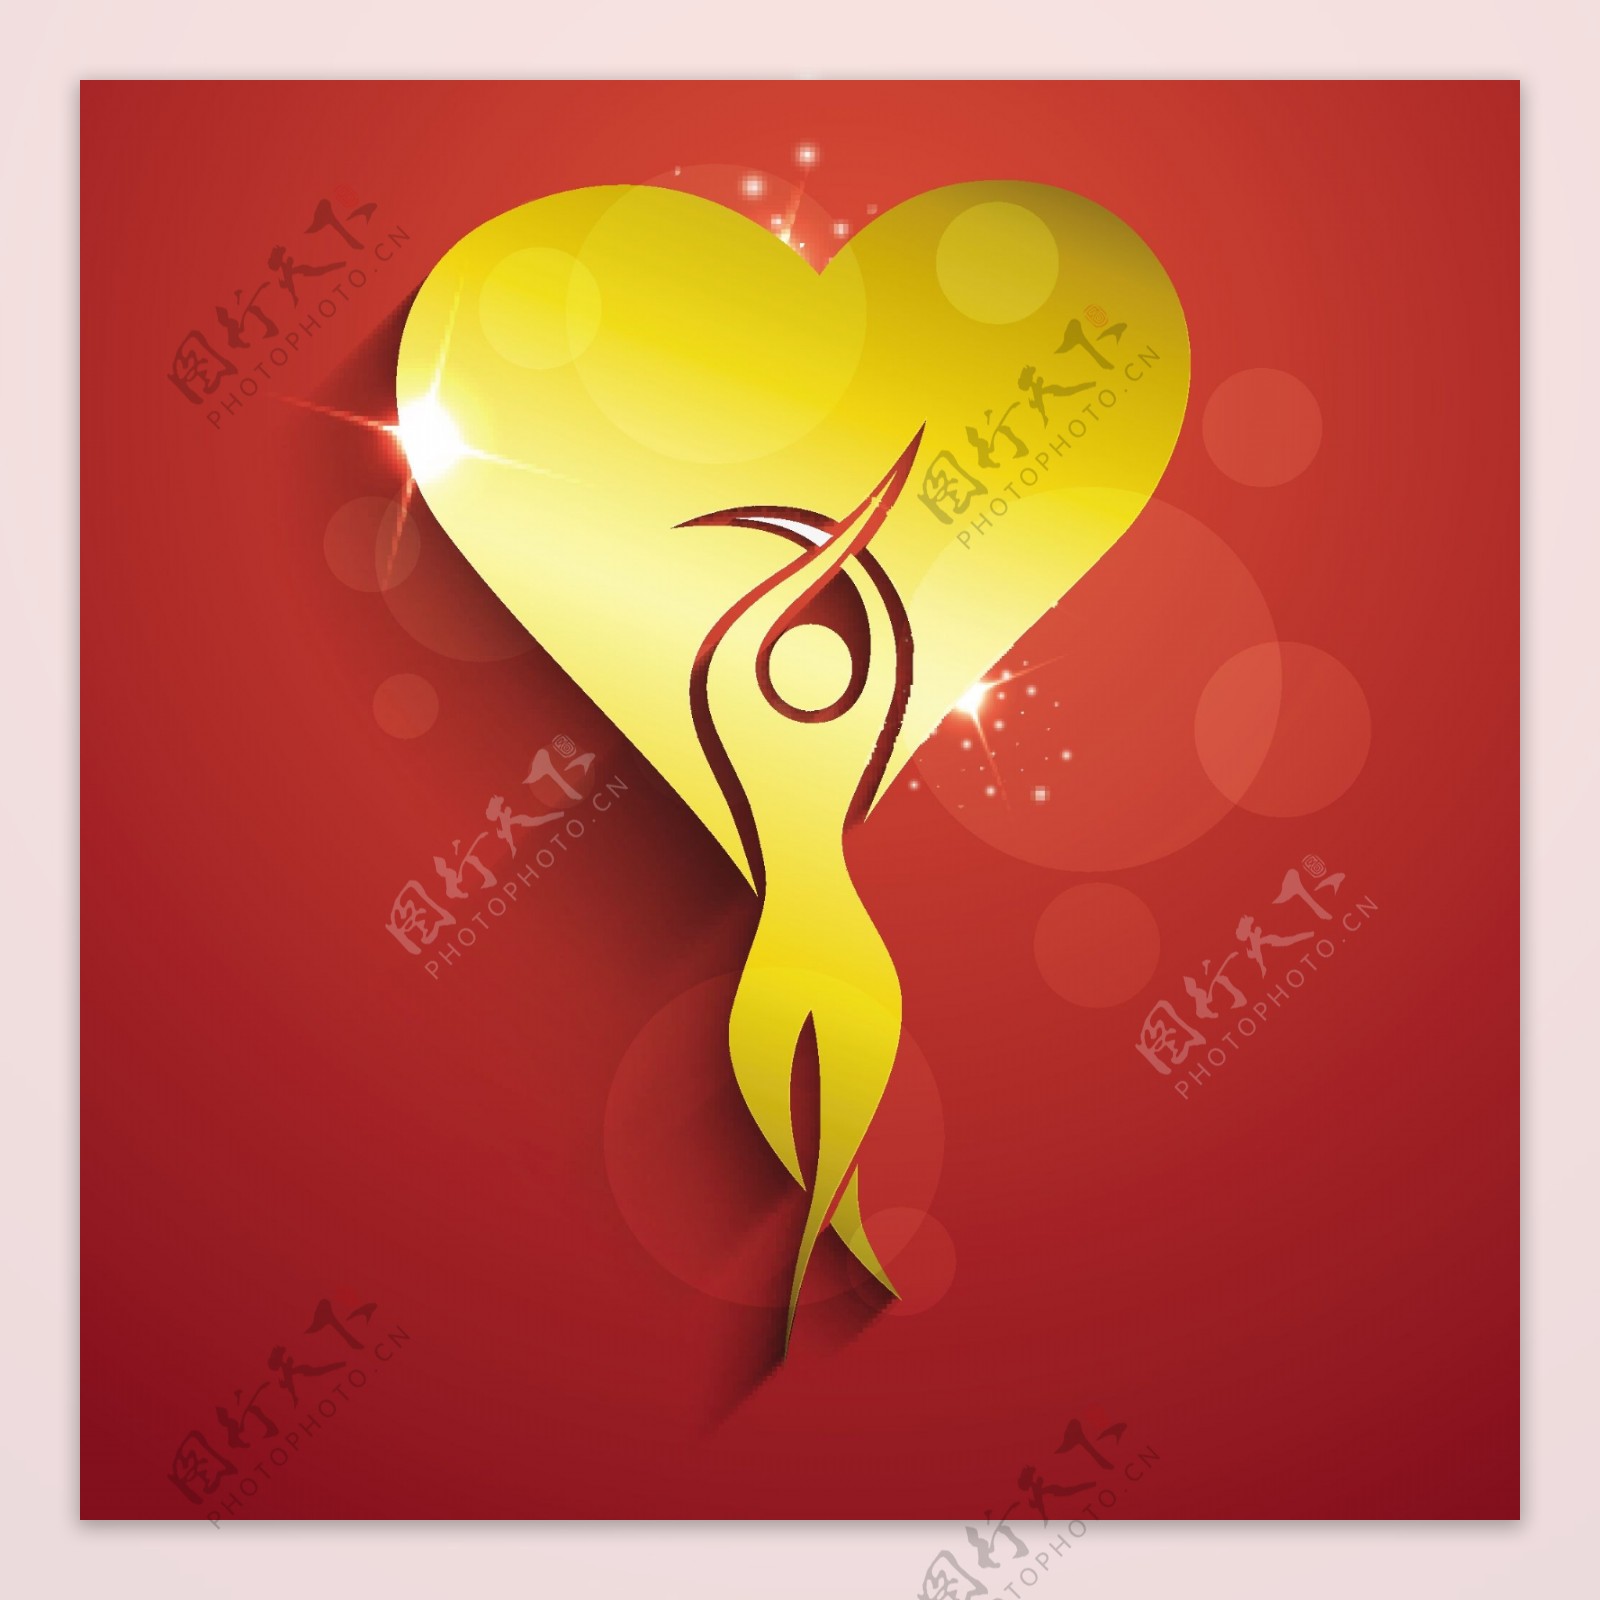 三八妇女节贺卡或海报与金色的心脏形状的红色背景上的一个女人插画设计